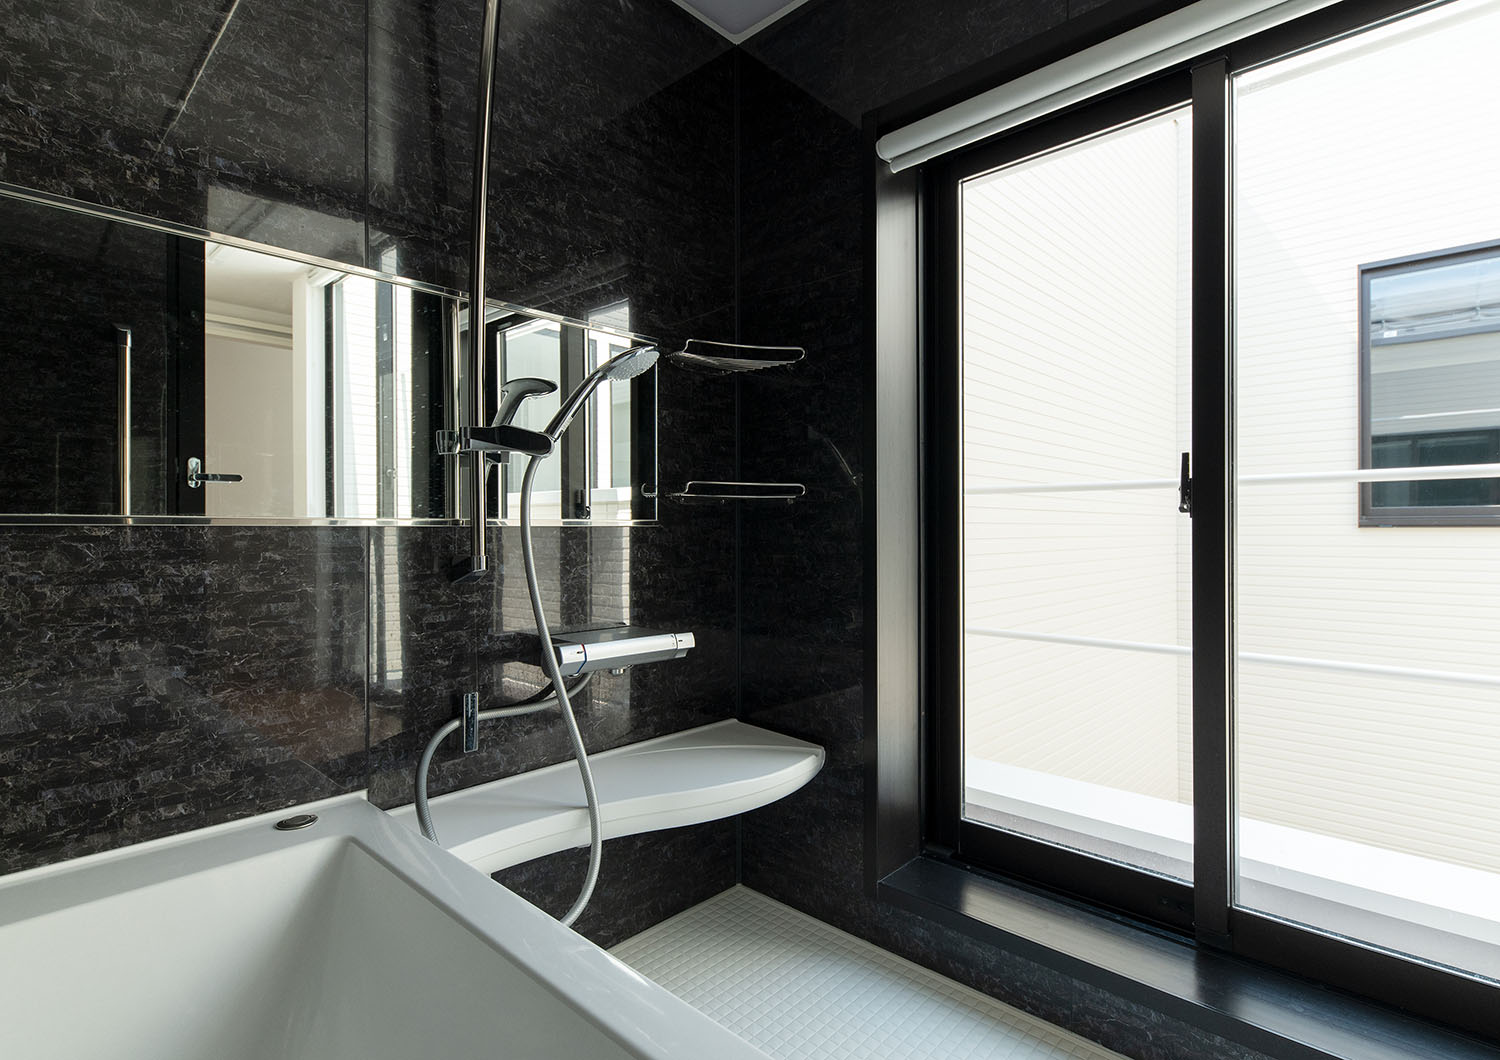 黒を基調とした大きな窓がある浴室・デザイン住宅